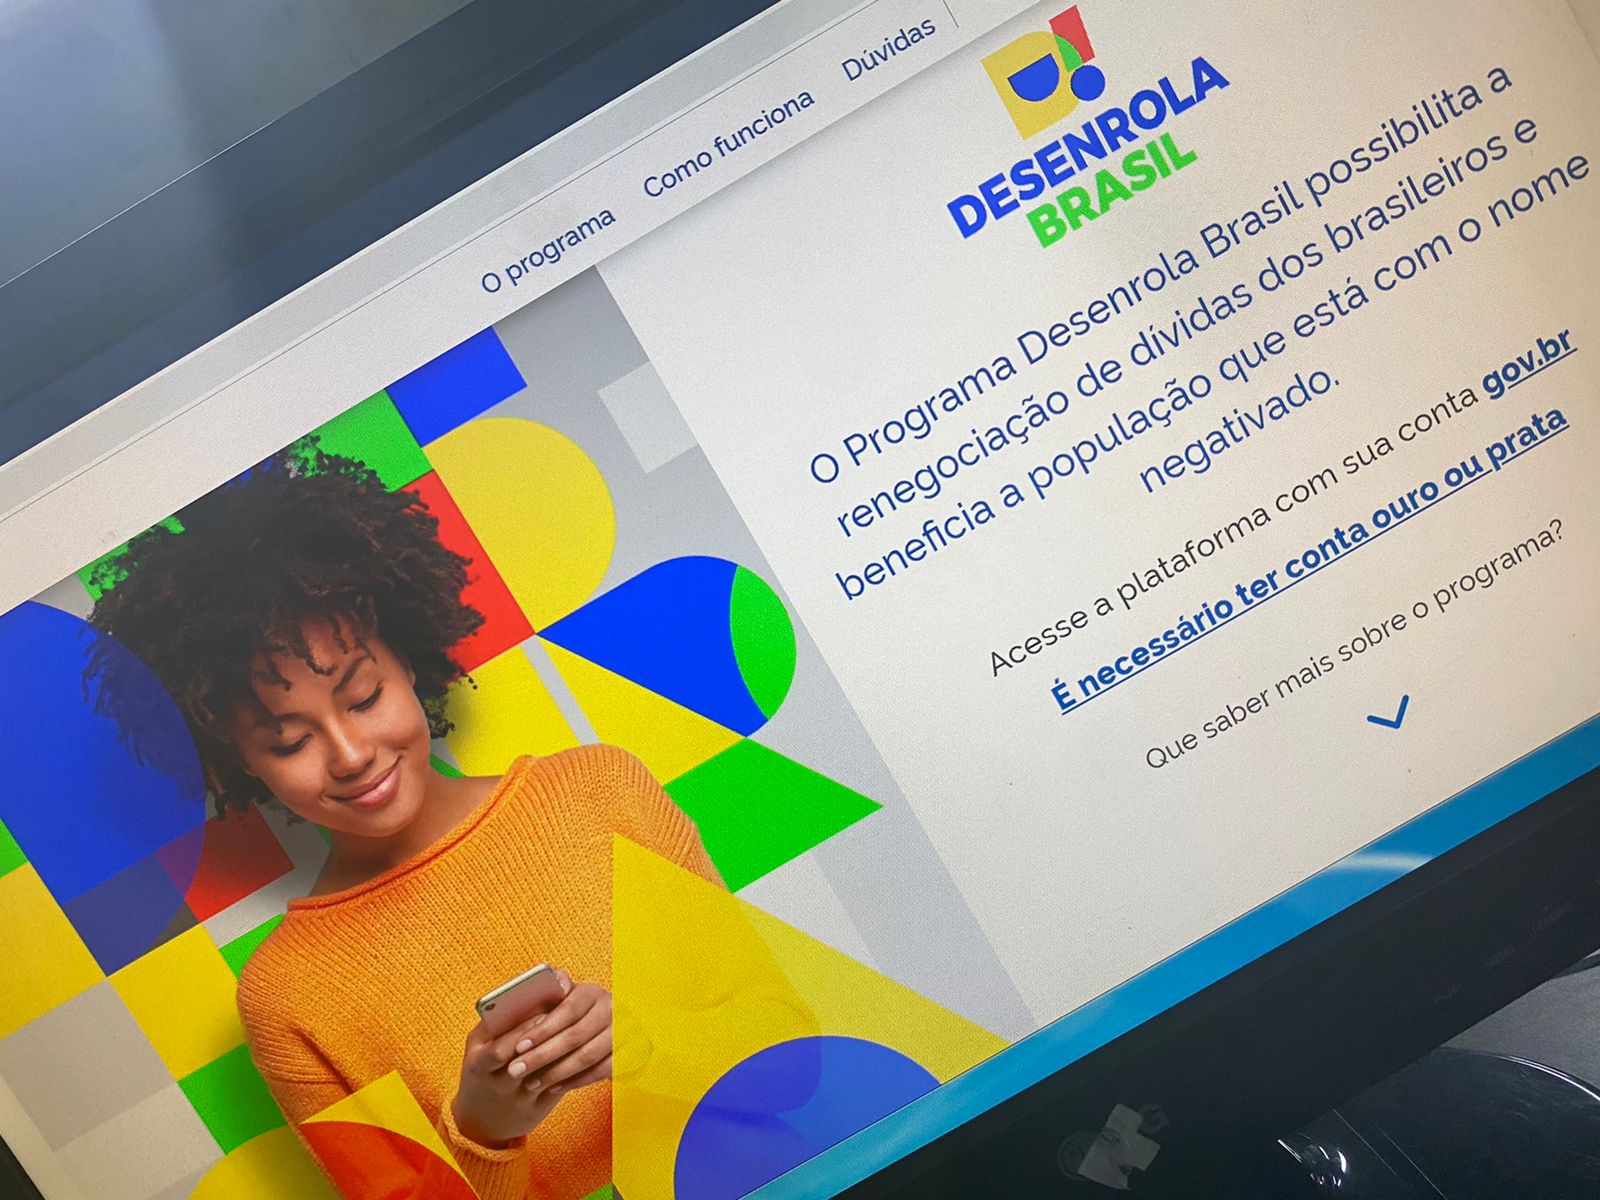 Segundo governo federal, Desenrola poderá beneficiar 32 milhões de brasileiros (DP)